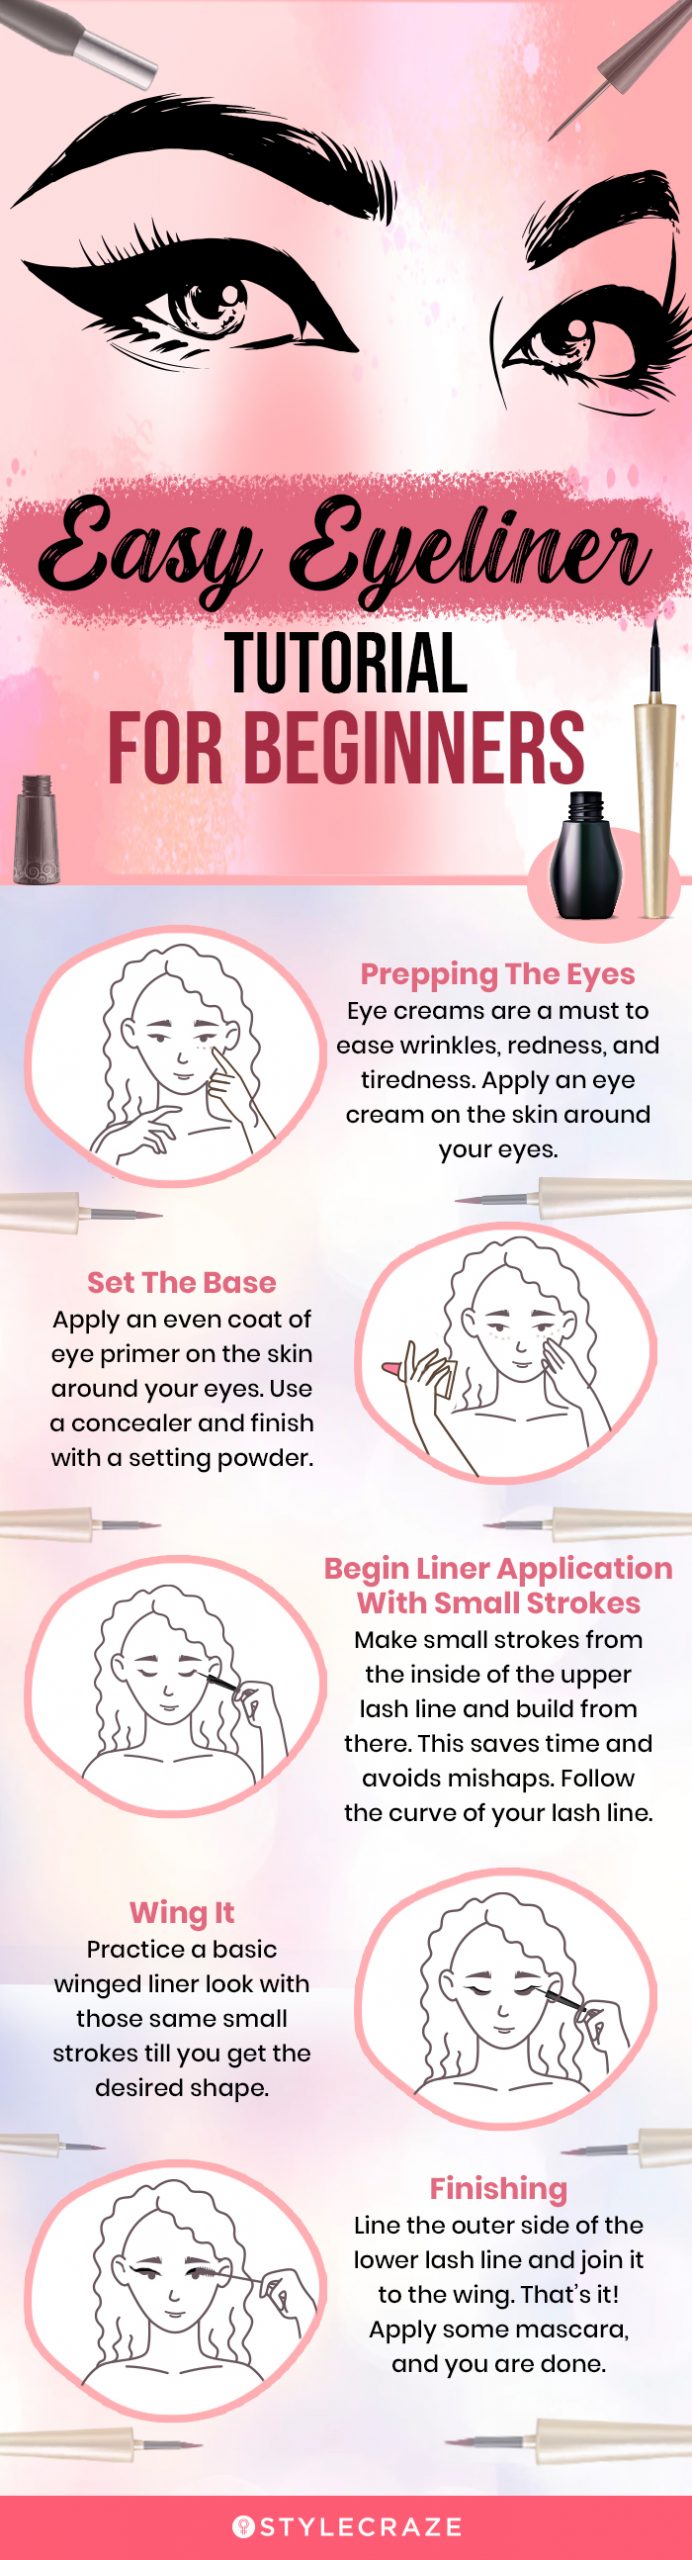 easy eyeliner tutorial for beginners (infographic)